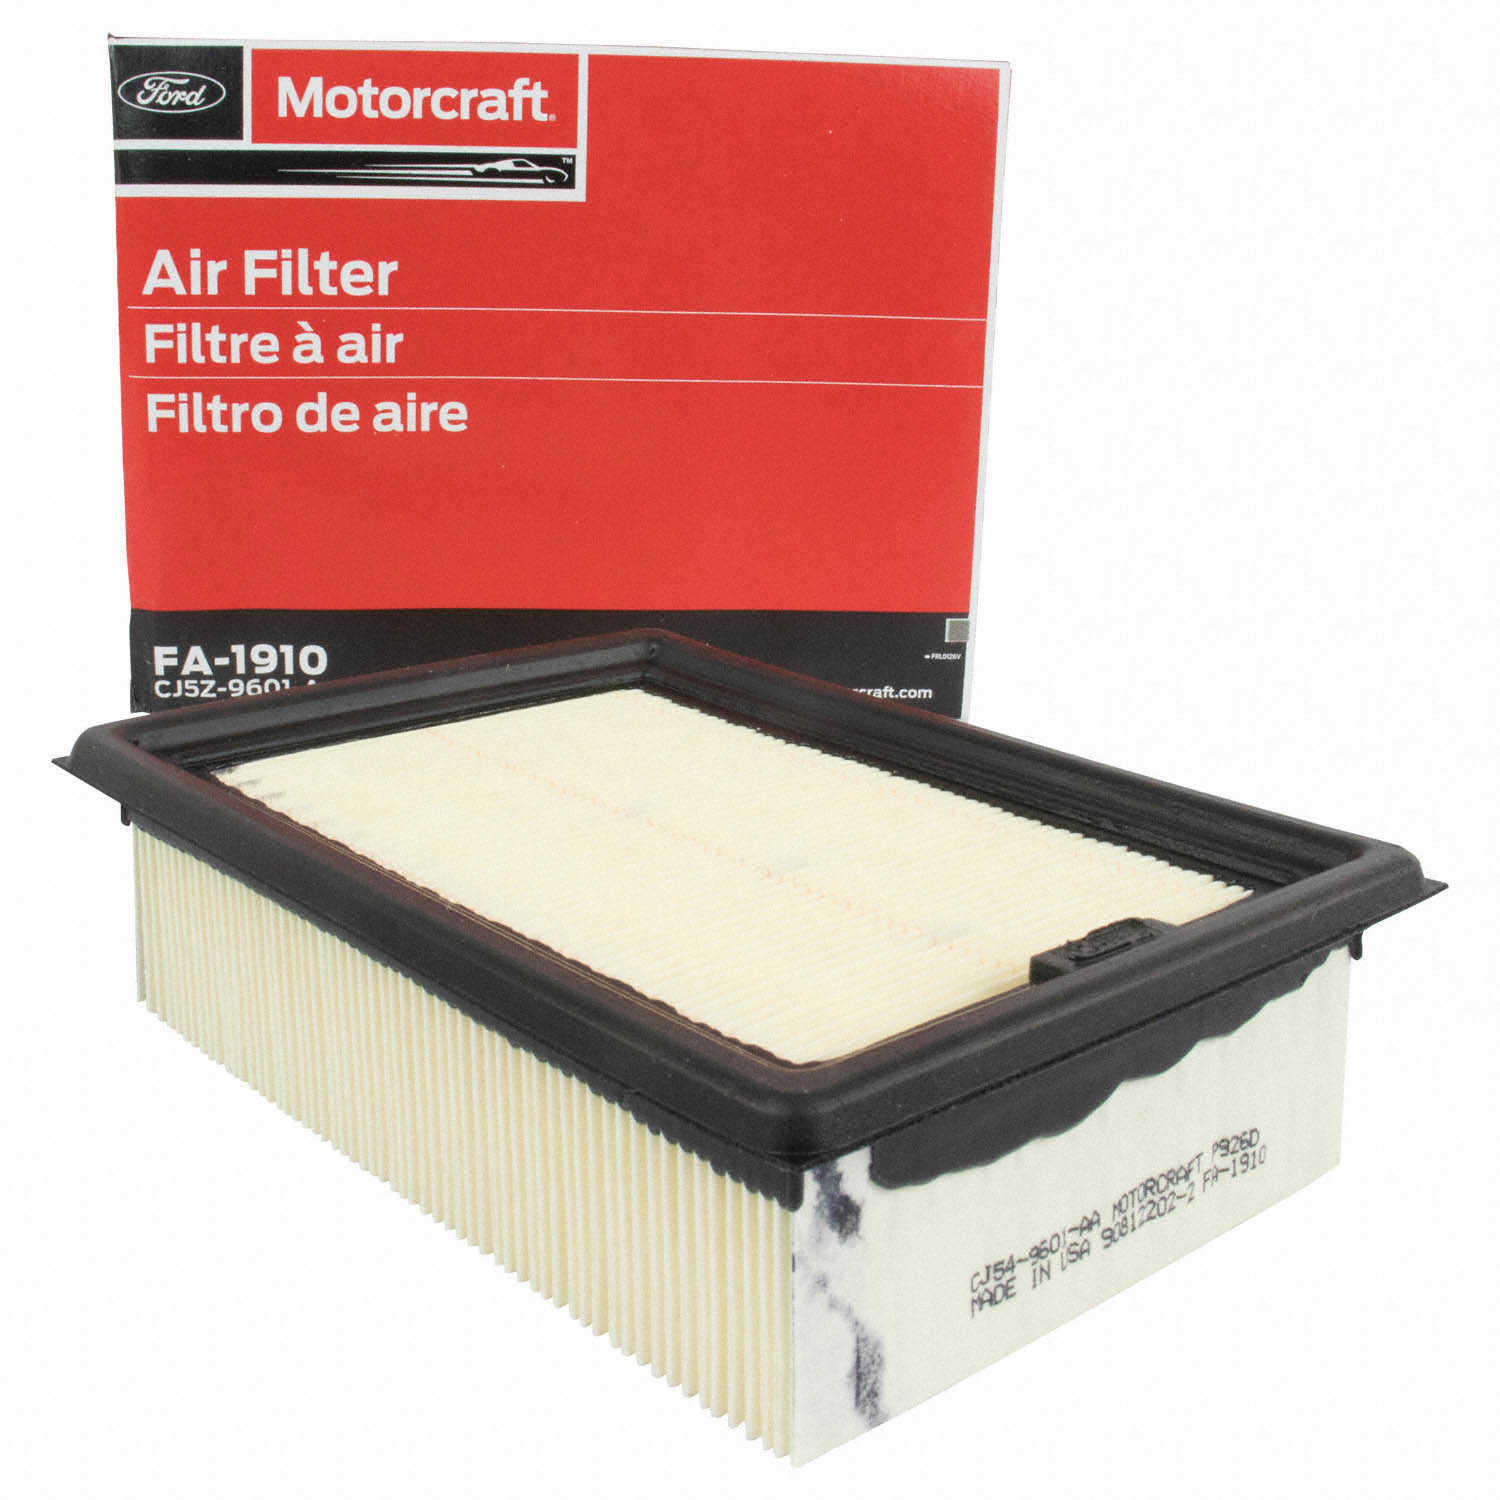 MOTORCRAFT - Air Filter - MOT FA-1910